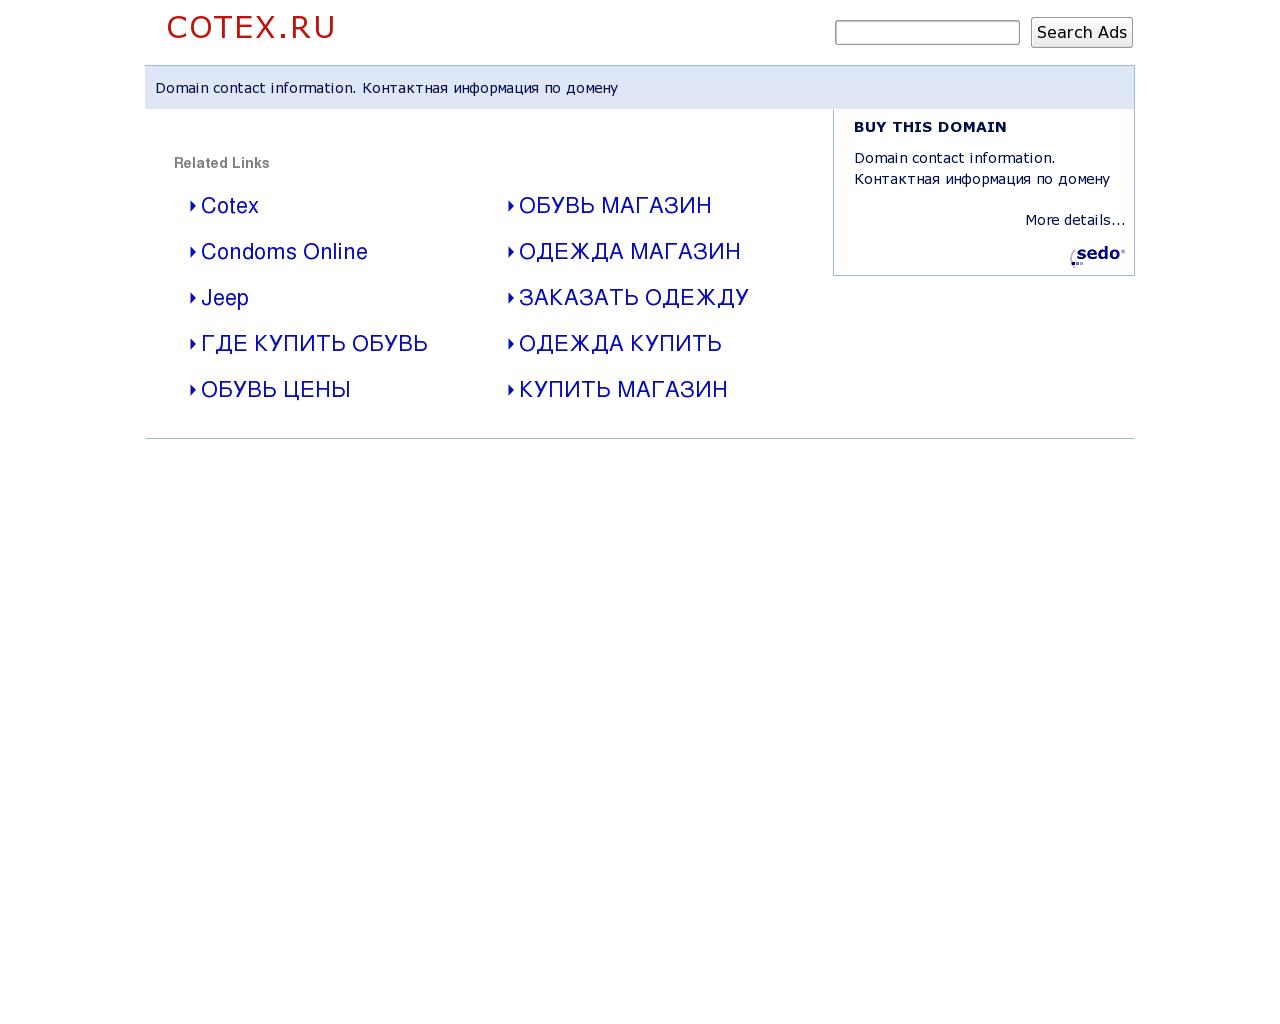 Изображение сайта cotex.ru в разрешении 1280x1024